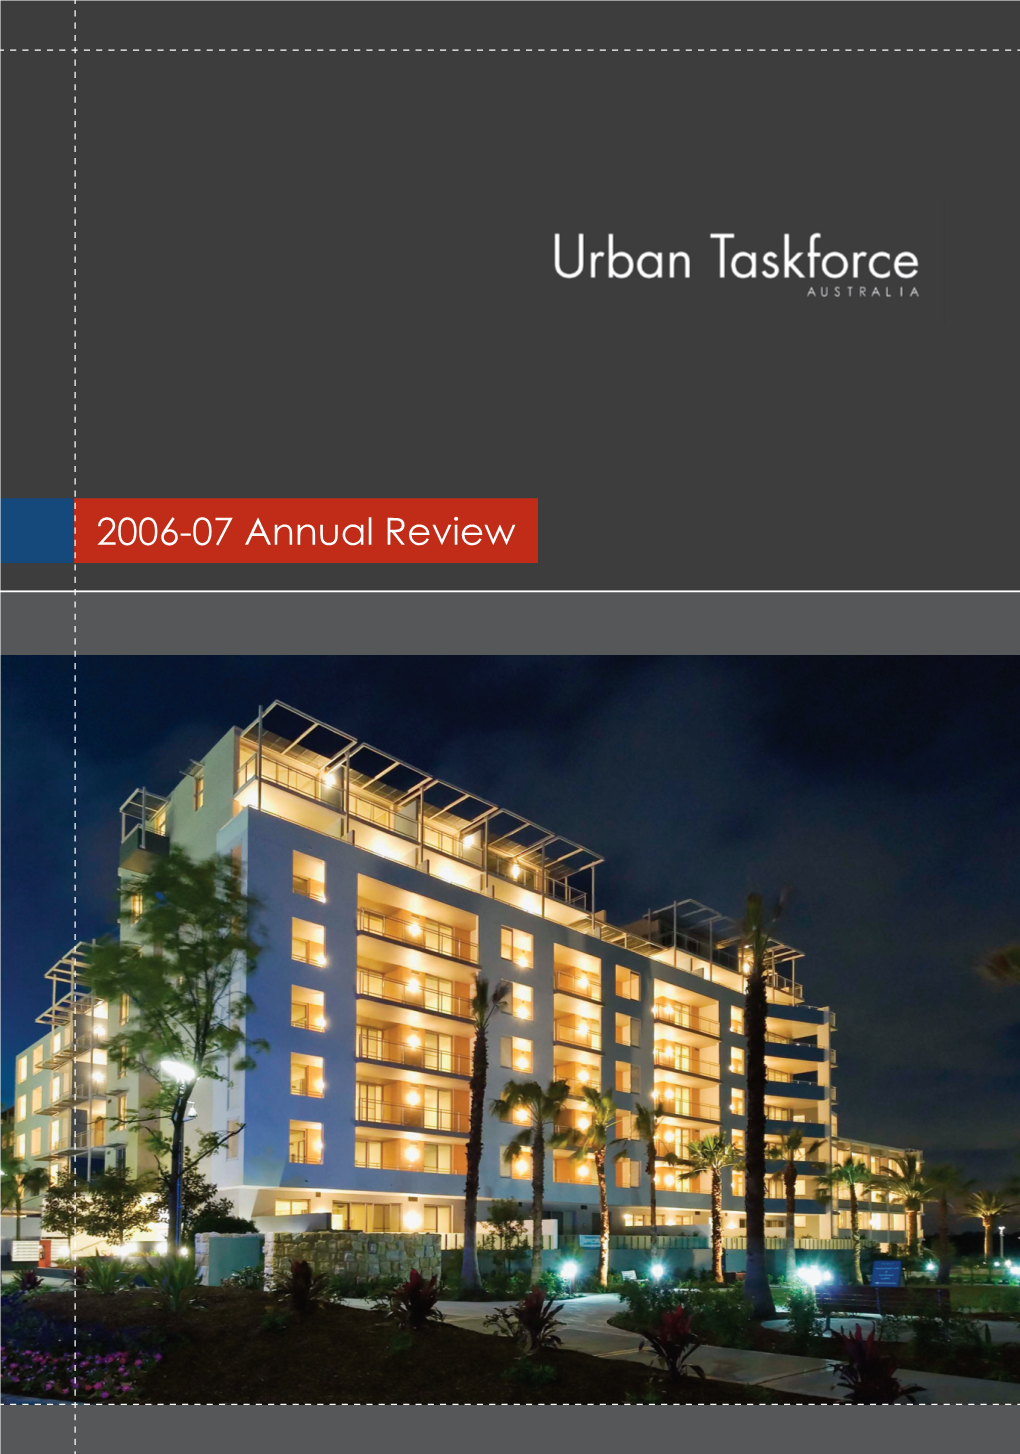 2006-07 Annual Review 02 Urban Taskforce